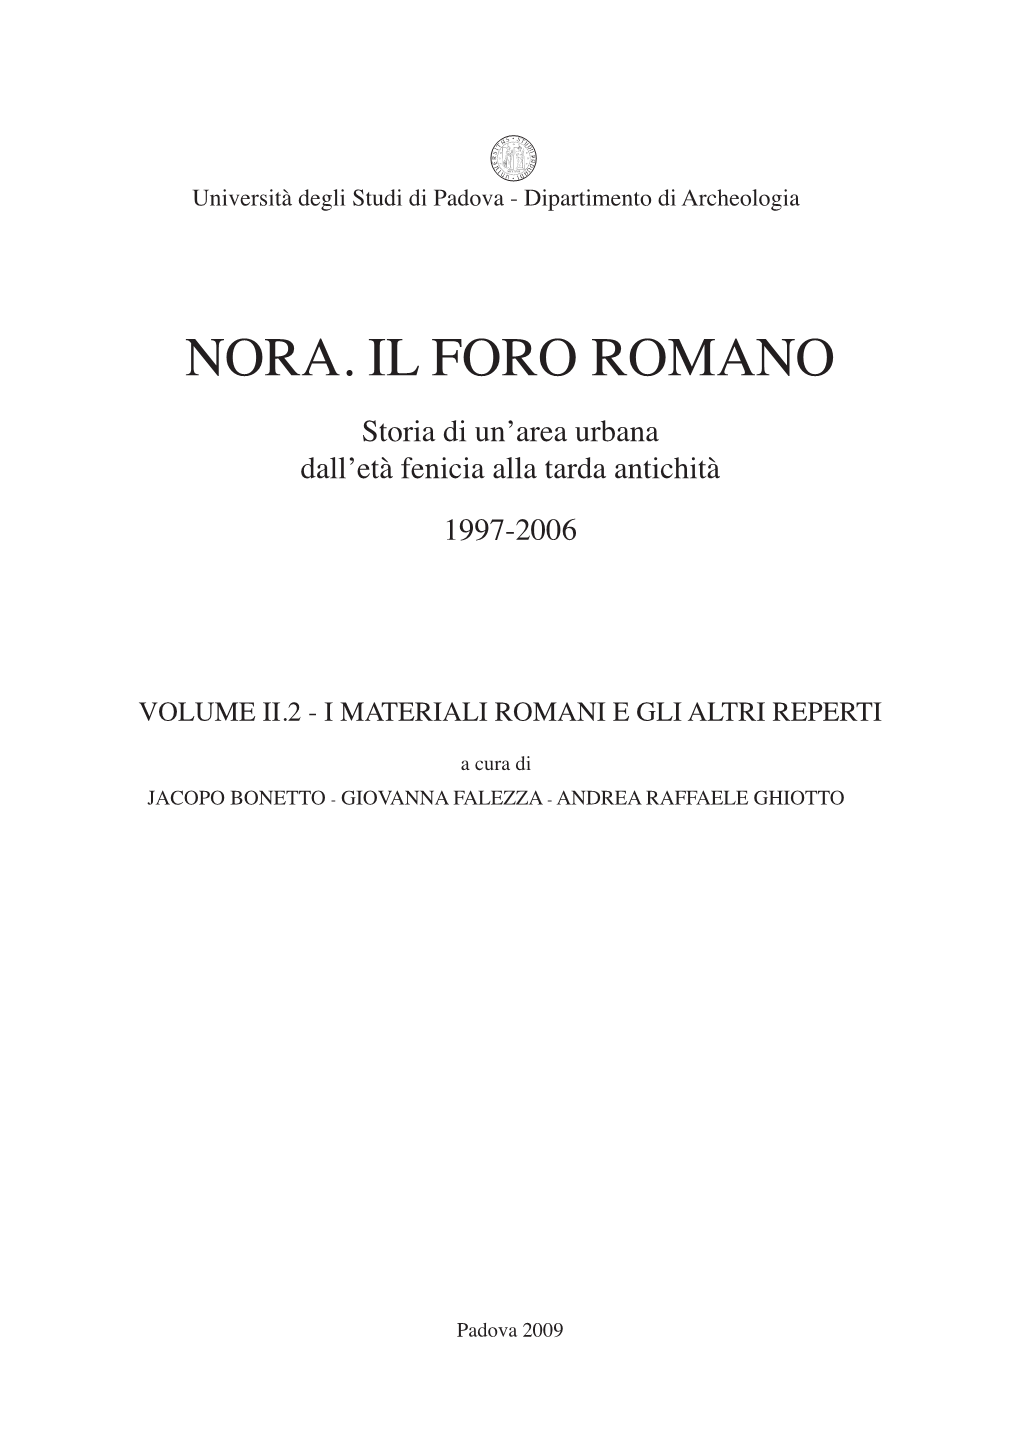 Nora. Il Foro Romano Storia Di Un’Area Urbana Dall’Età Fenicia Alla Tarda Antichità 1997-2006